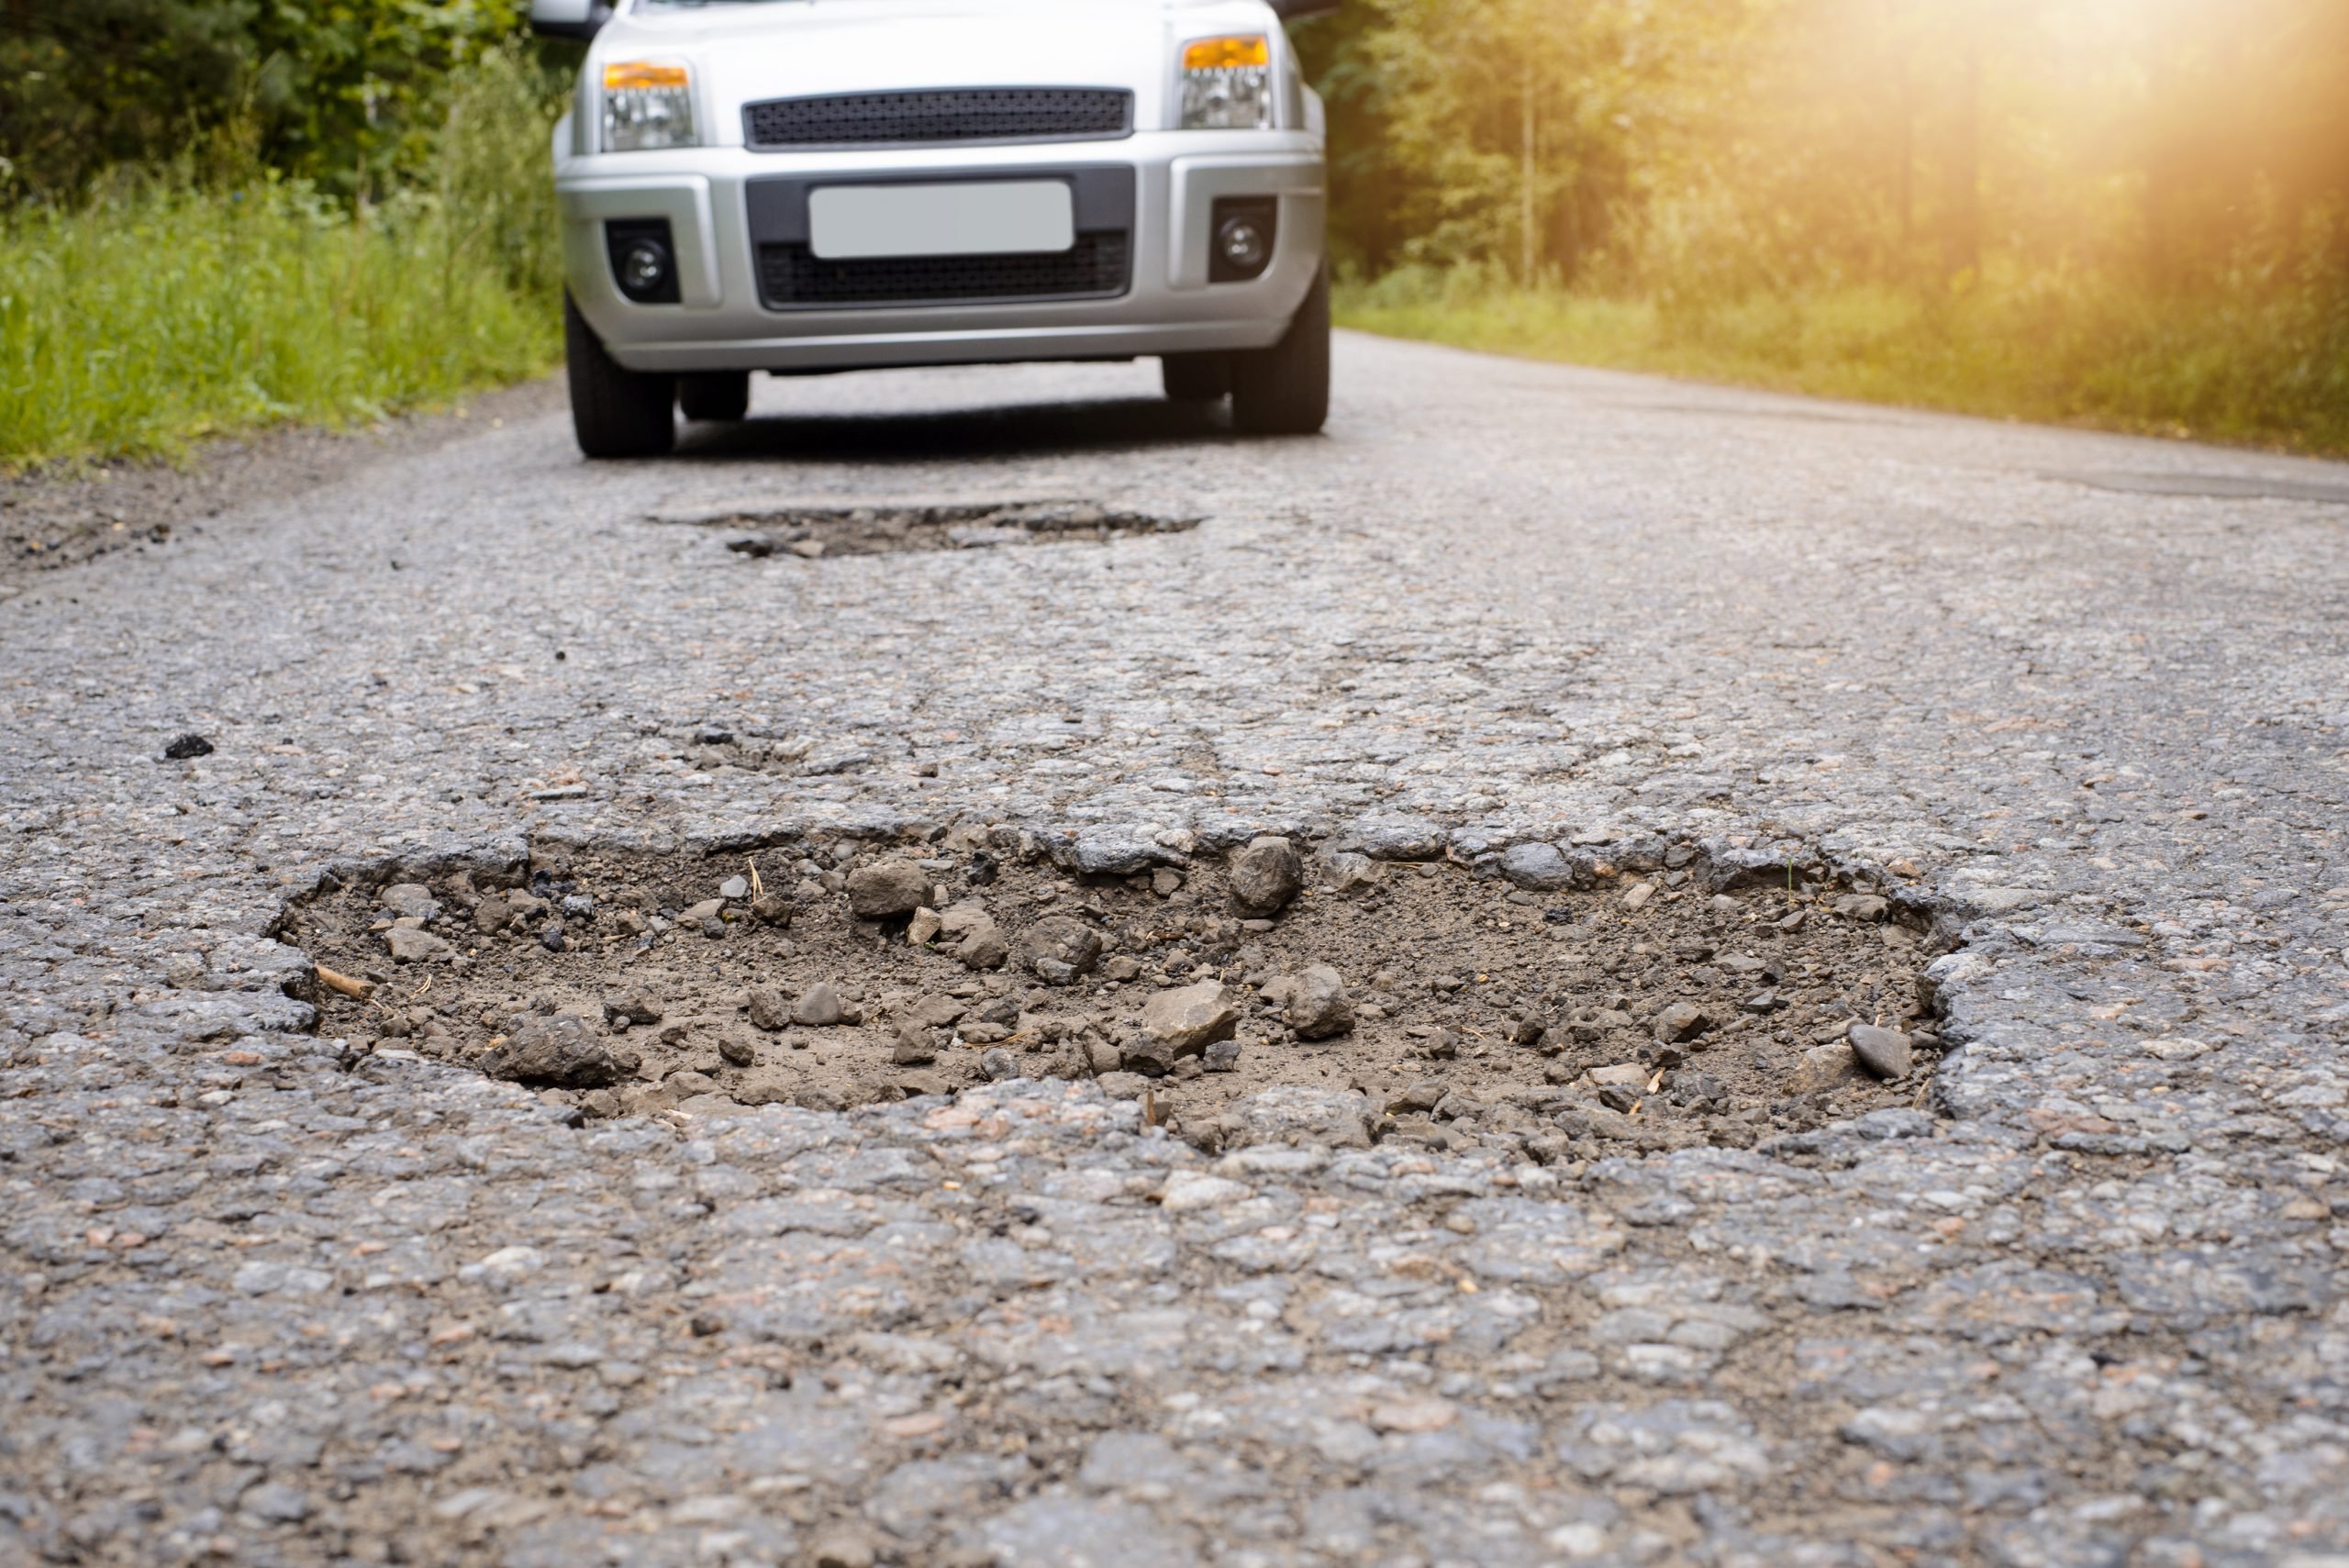 O Brasil tem o pior asfalto do mundo (não há suspensão que resista)